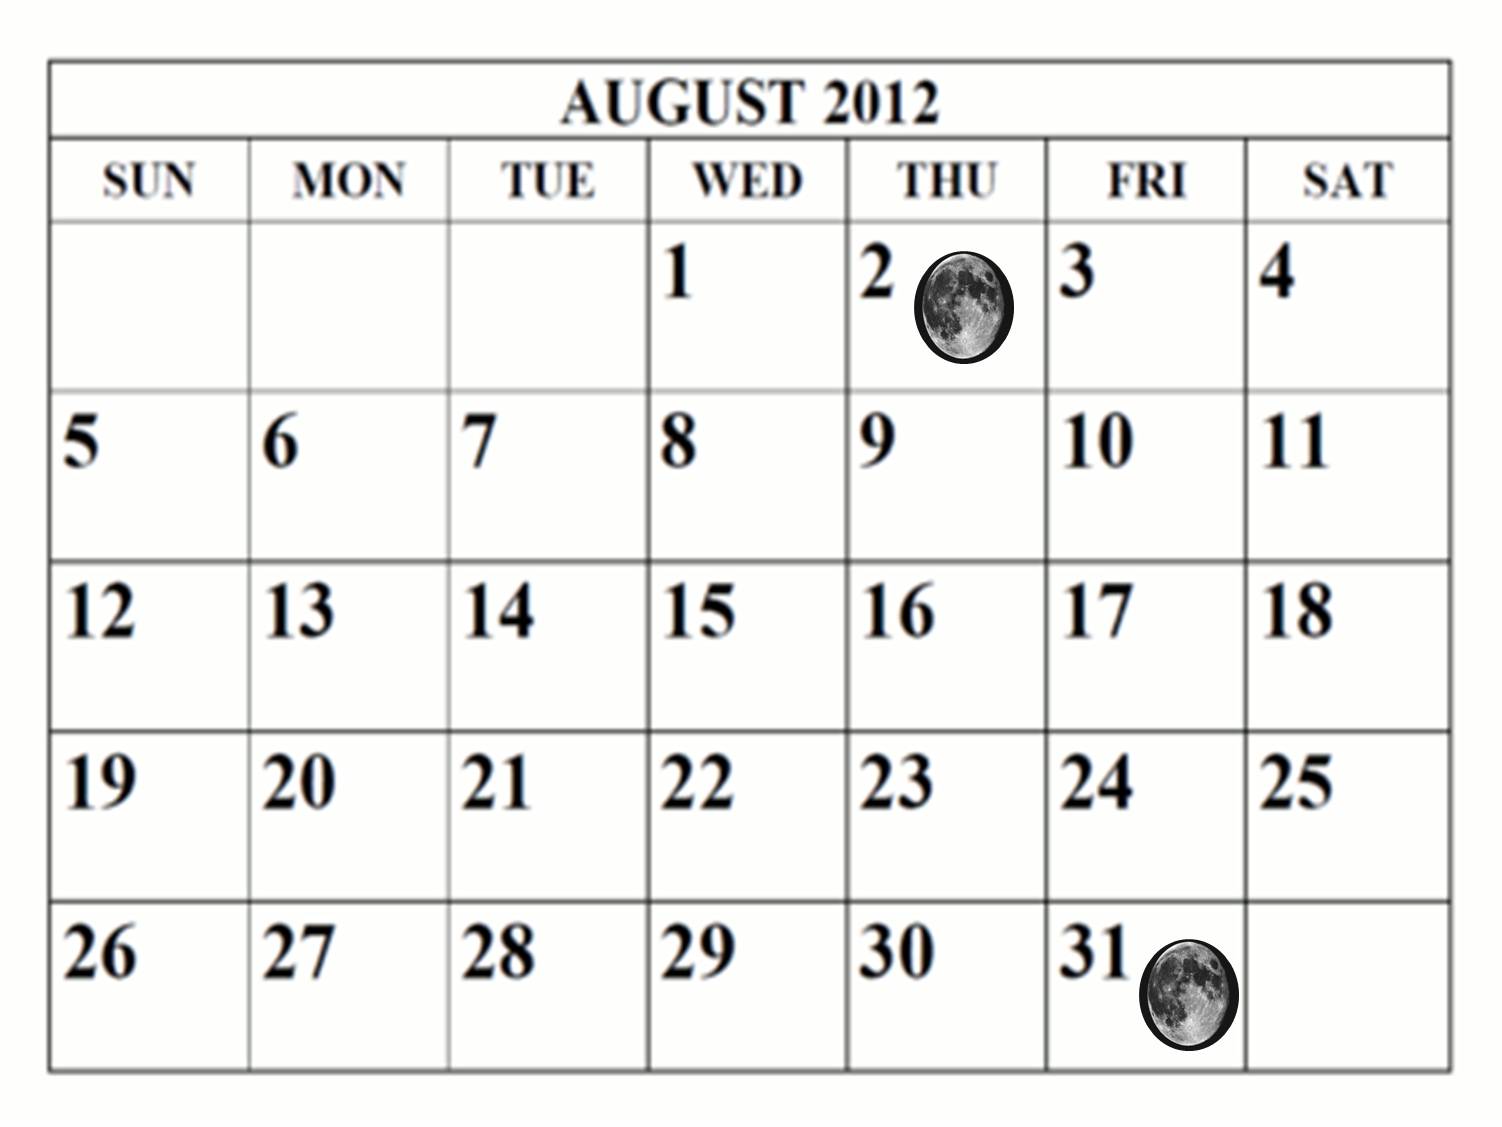 DMR'S ASTRONOMY CLUB Blue Moon Calendar August 2012